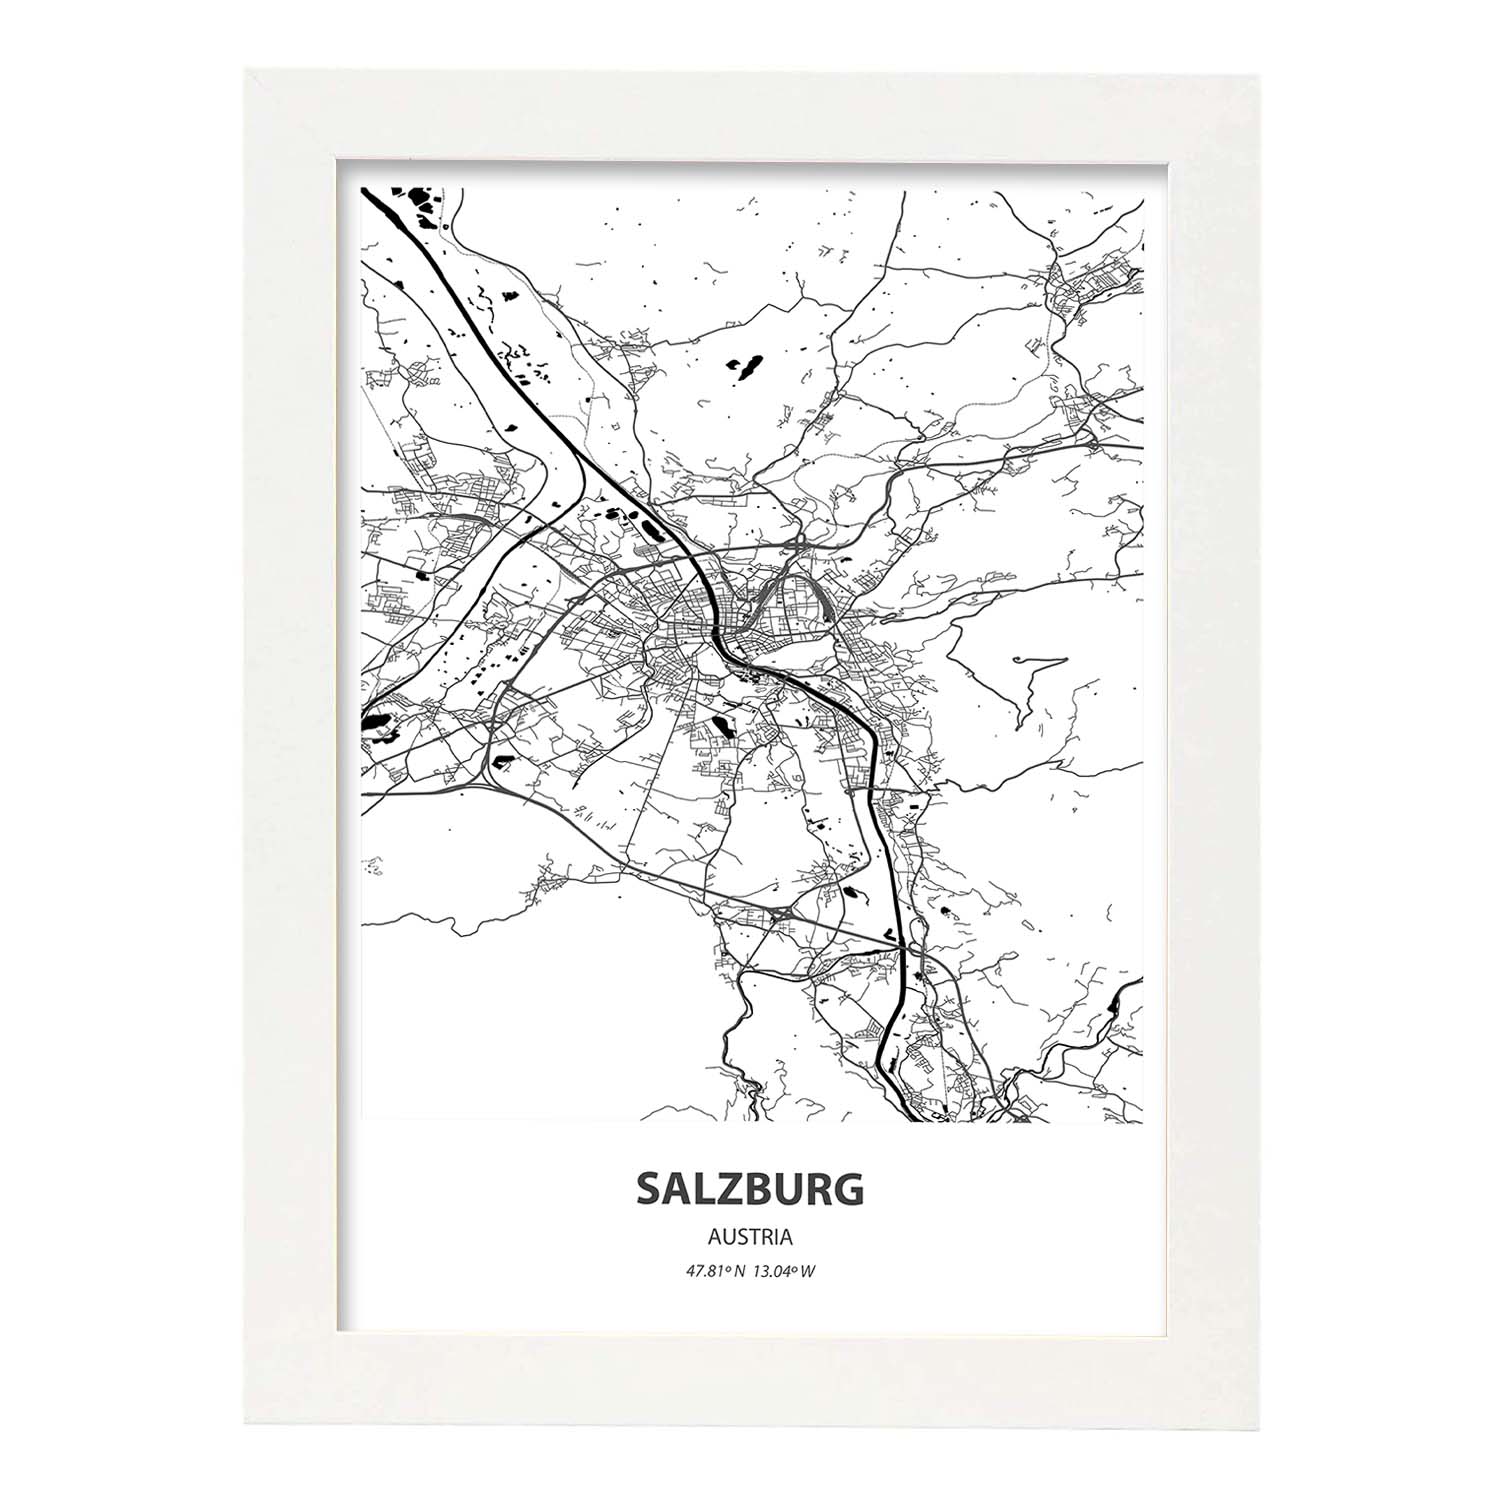 Poster con mapa de Salzburg - Austria. Láminas de ciudades de Europa con mares y ríos en color negro.-Artwork-Nacnic-A4-Marco Blanco-Nacnic Estudio SL